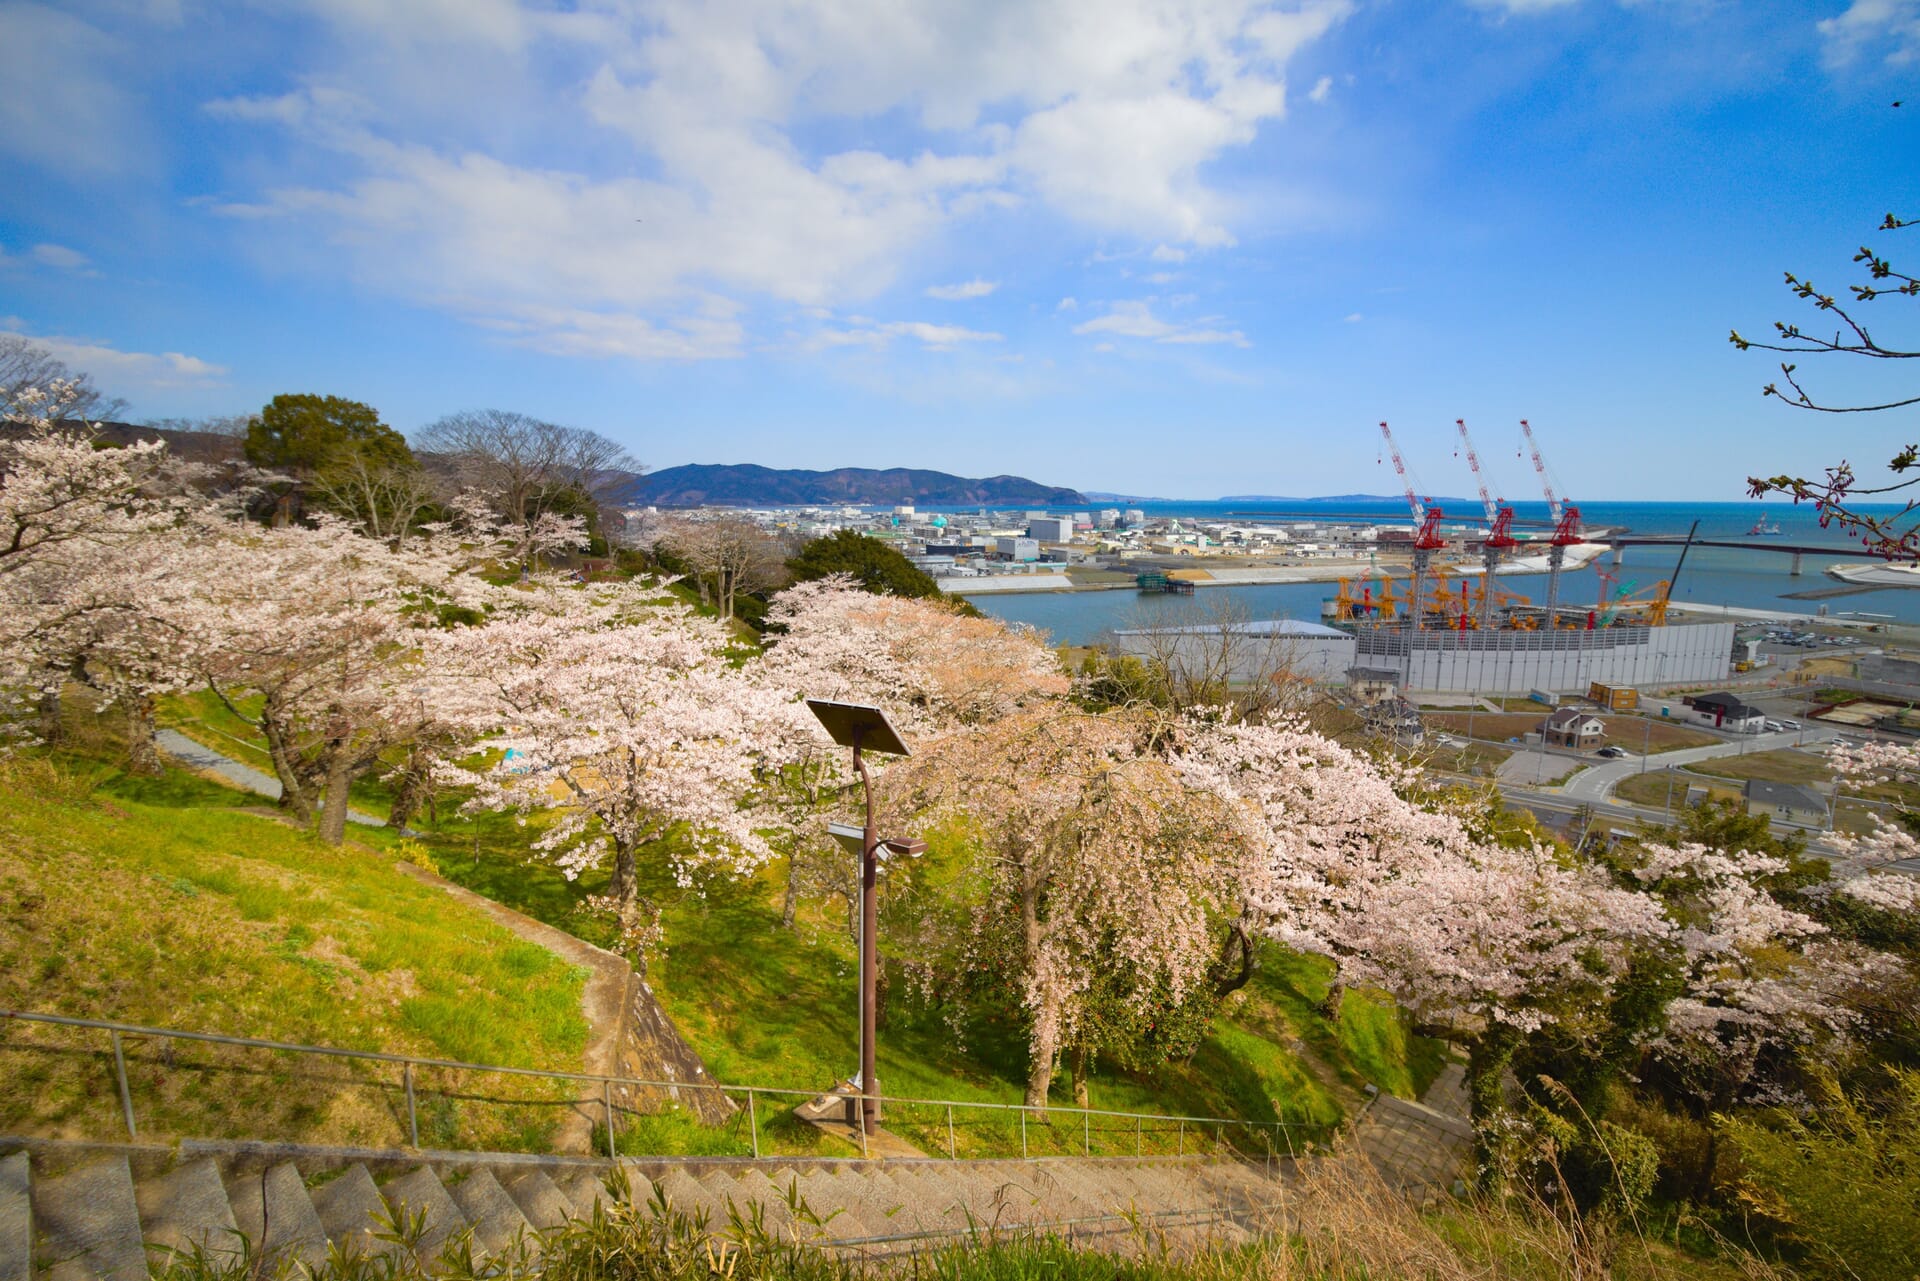 Cherry blossoms in Hiyoriyama Park